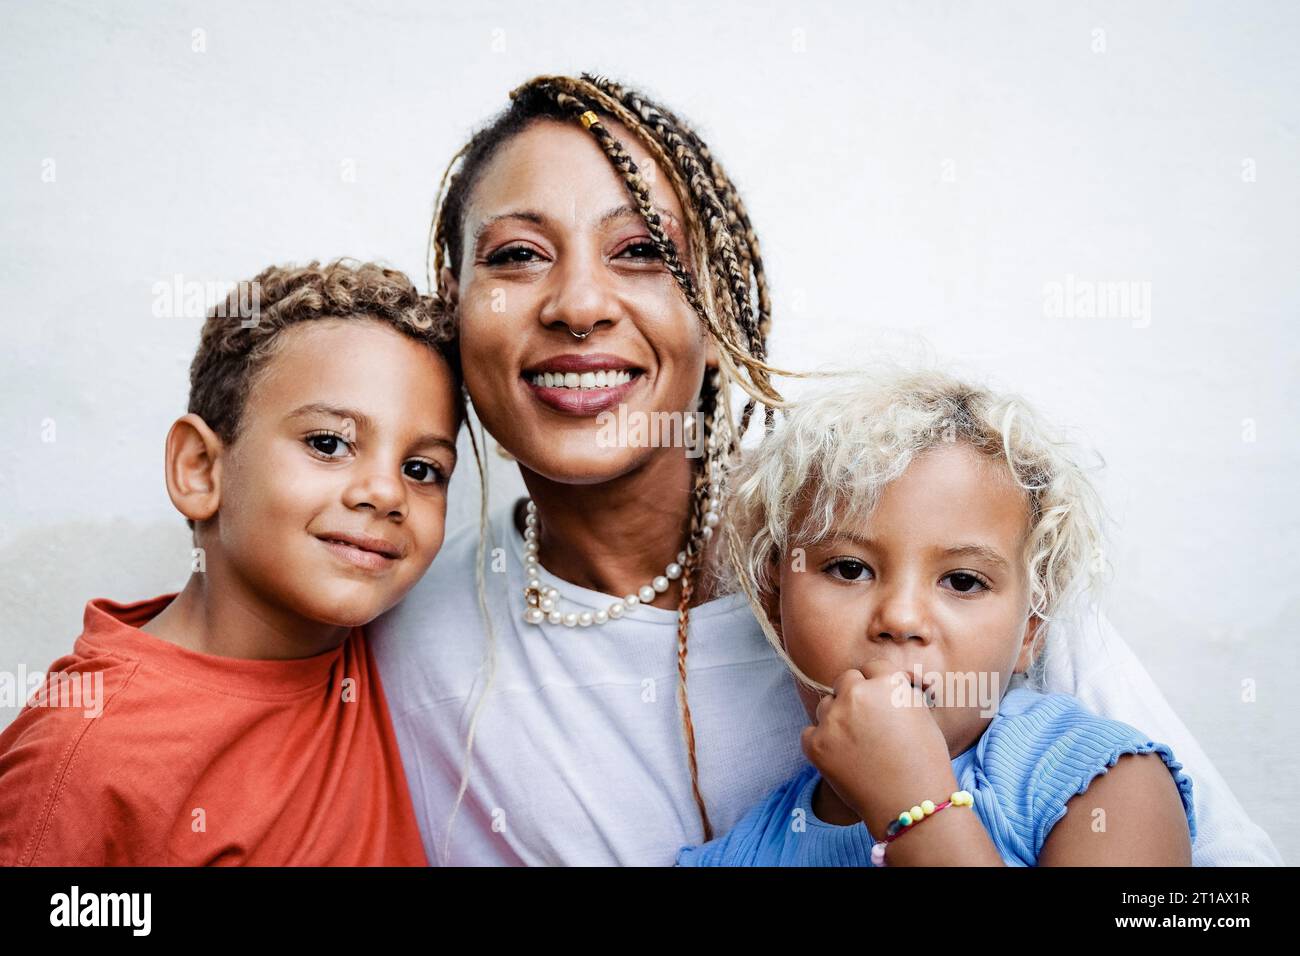 Famiglia africana che si diverte all'aperto - madre, figlia e figlio che ridono, baciano fuori - rapporto di famiglia Foto Stock